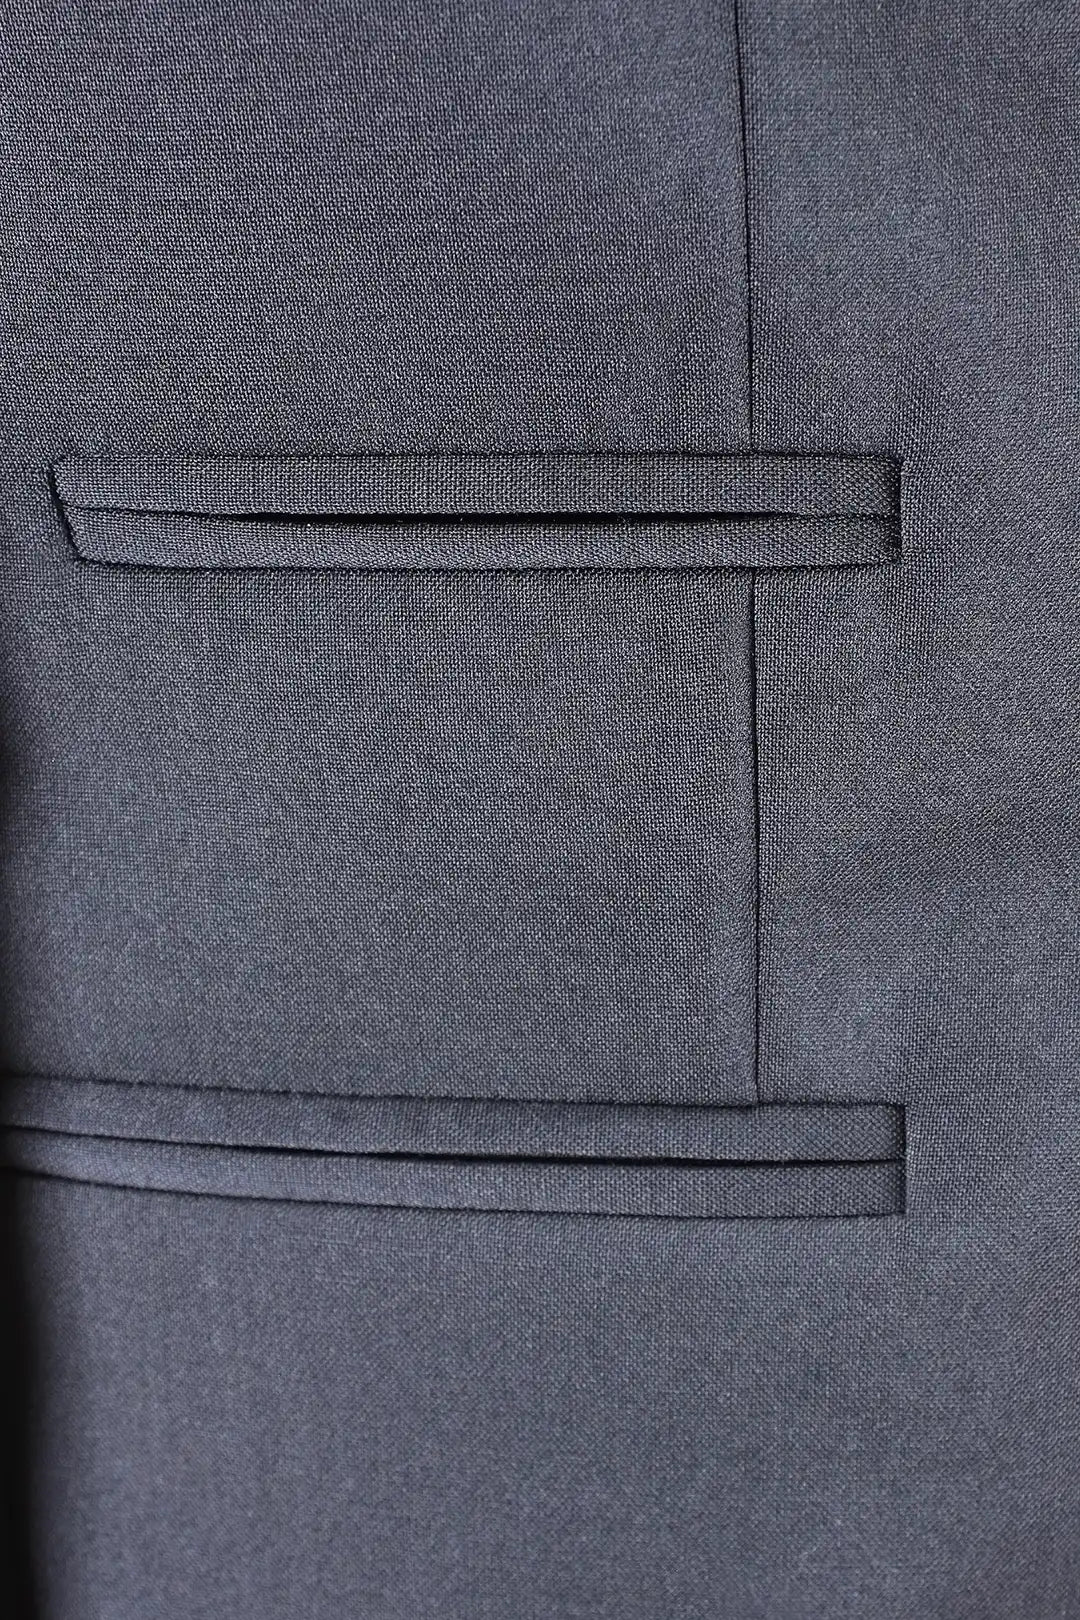 Giacca in tela di lana blu con rever profilato nero filetti